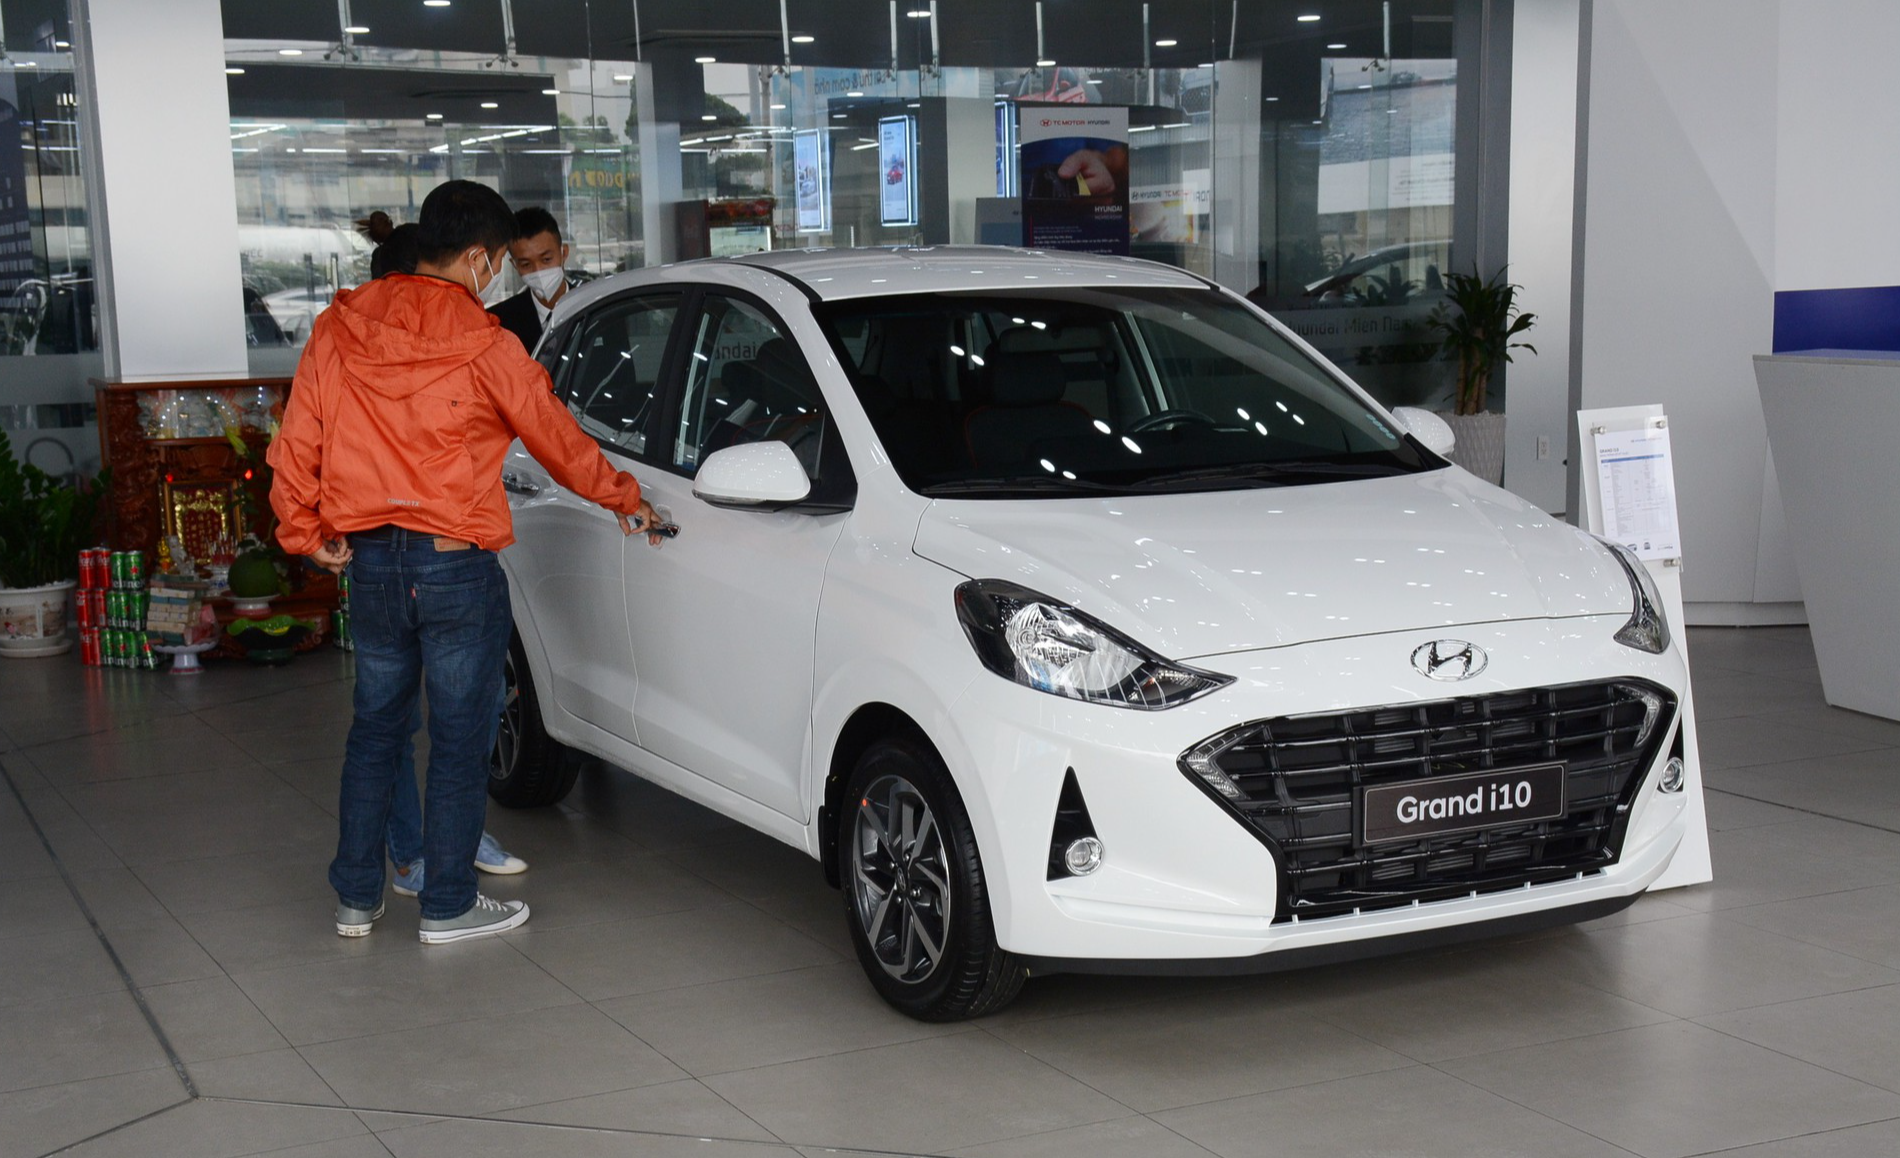 6 mẫu ô tô giá rẻ nhất Việt Nam hiện nay